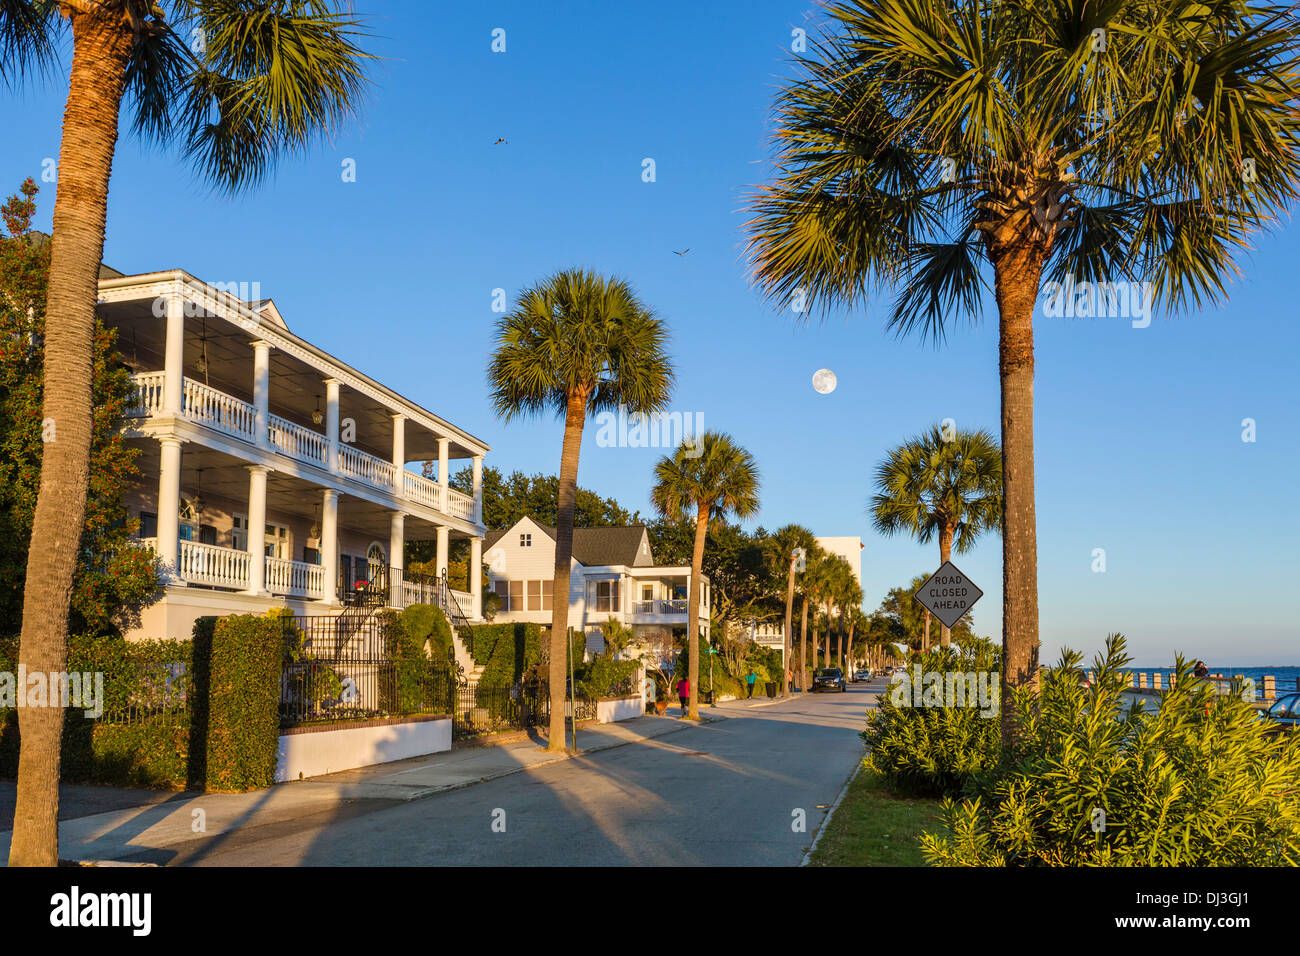 Les maisons historiques le long de la promenade Waterfront sur Murray Boulevard, éclairé par un soleil couchant, et avec la pleine lune, Charleston, Caroline du Sud, USA Banque D'Images